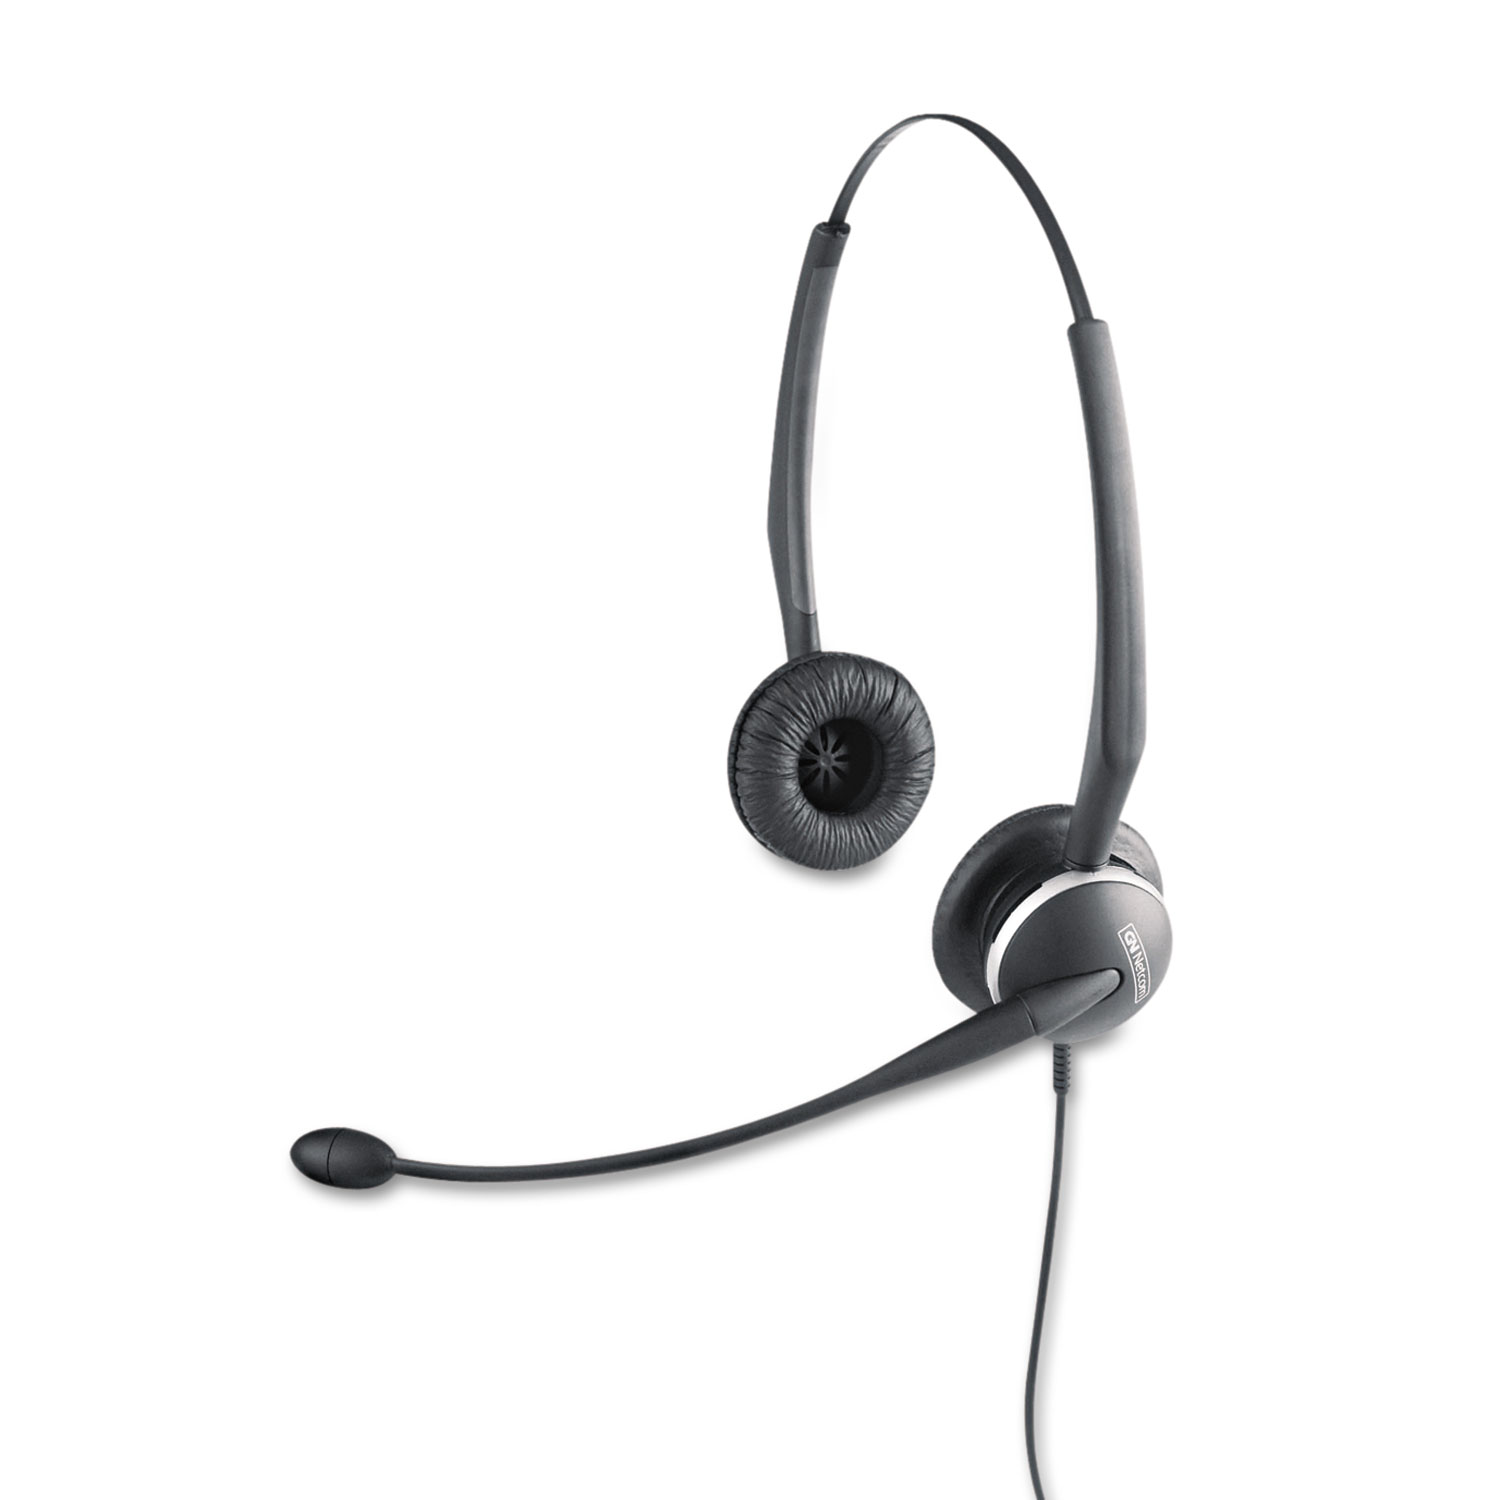  Jabra 10247 GN2125 Binaural Over-the-Head Telephone Headset w/Noise Canceling Mic (JBR010247) 